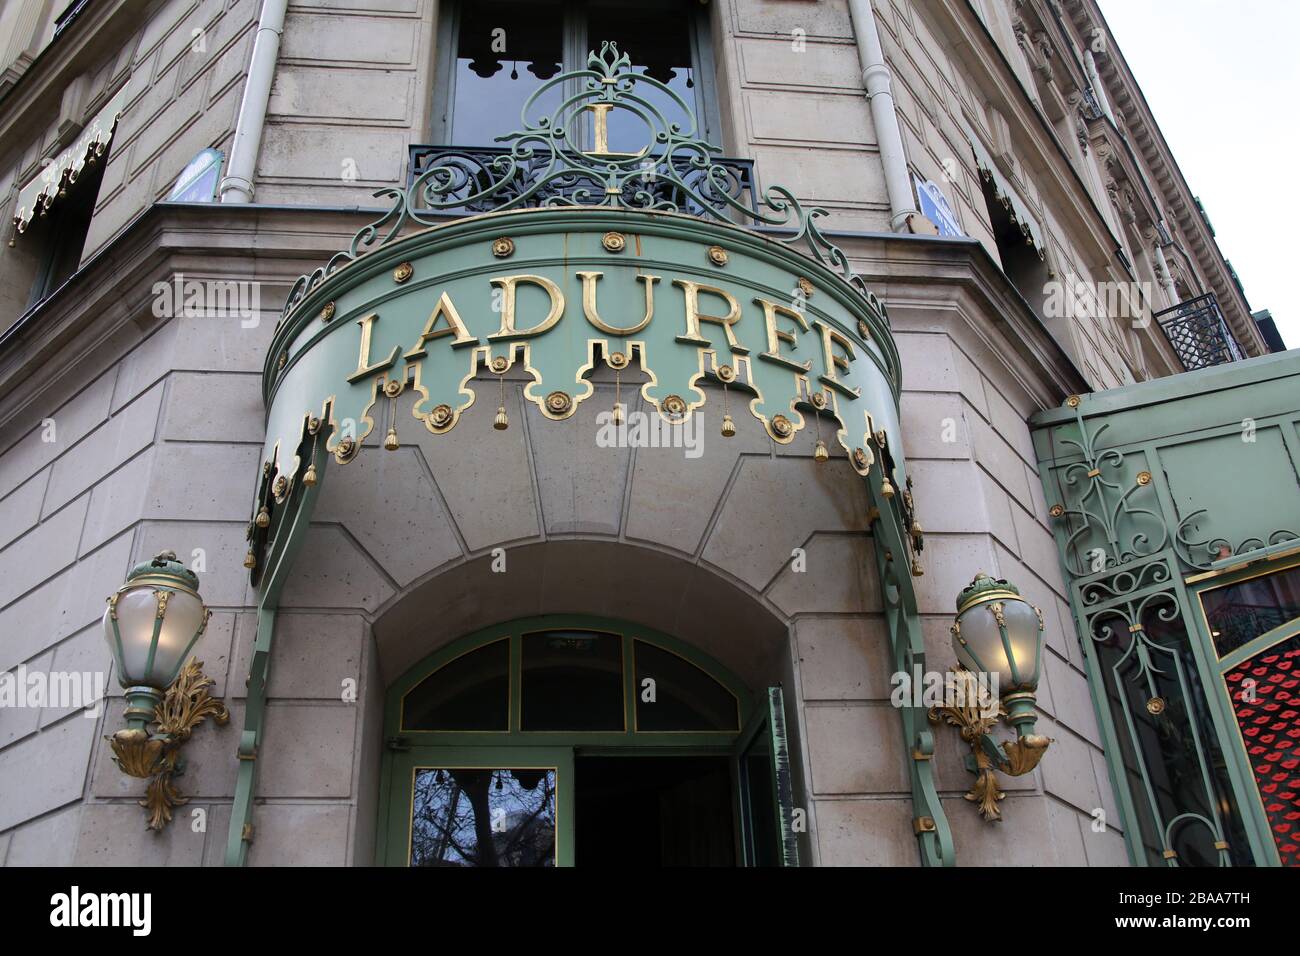 Ladurée, Champs Elysées, Paris,France Stock Photo